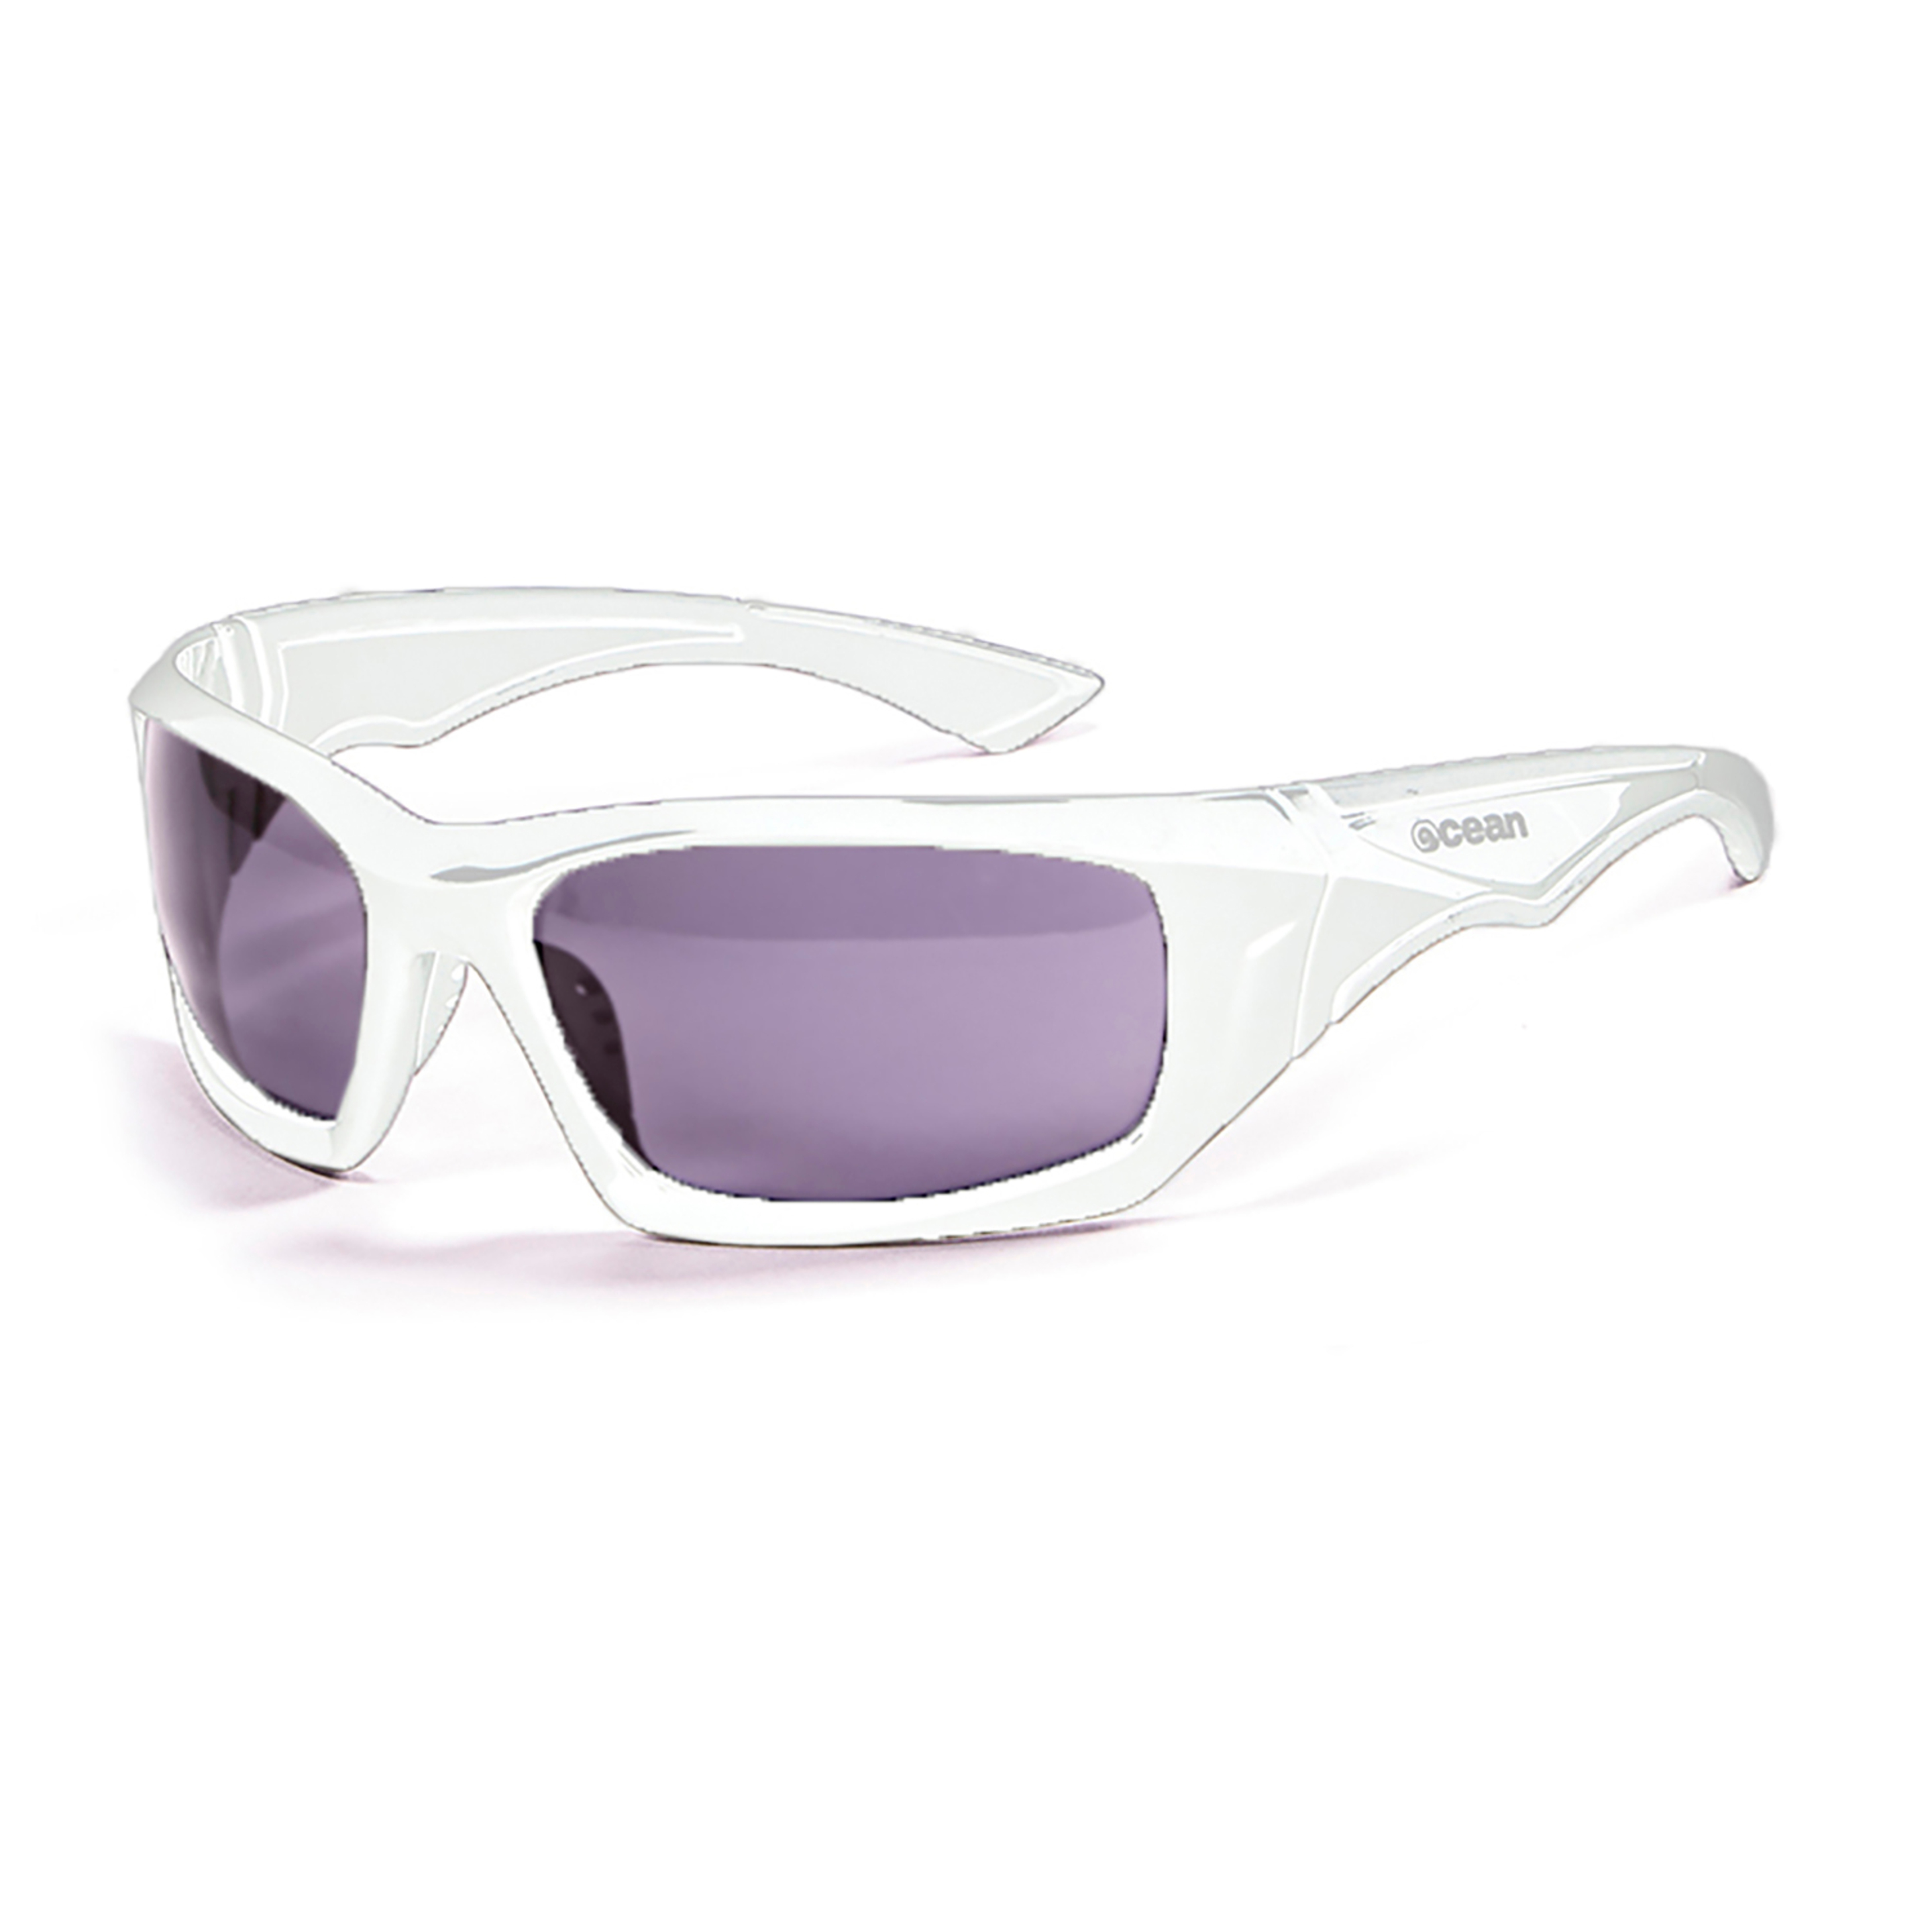 Óculos De Sol Técnicos Antigua Ocean Sunglasses - Branco | Sport Zone MKP